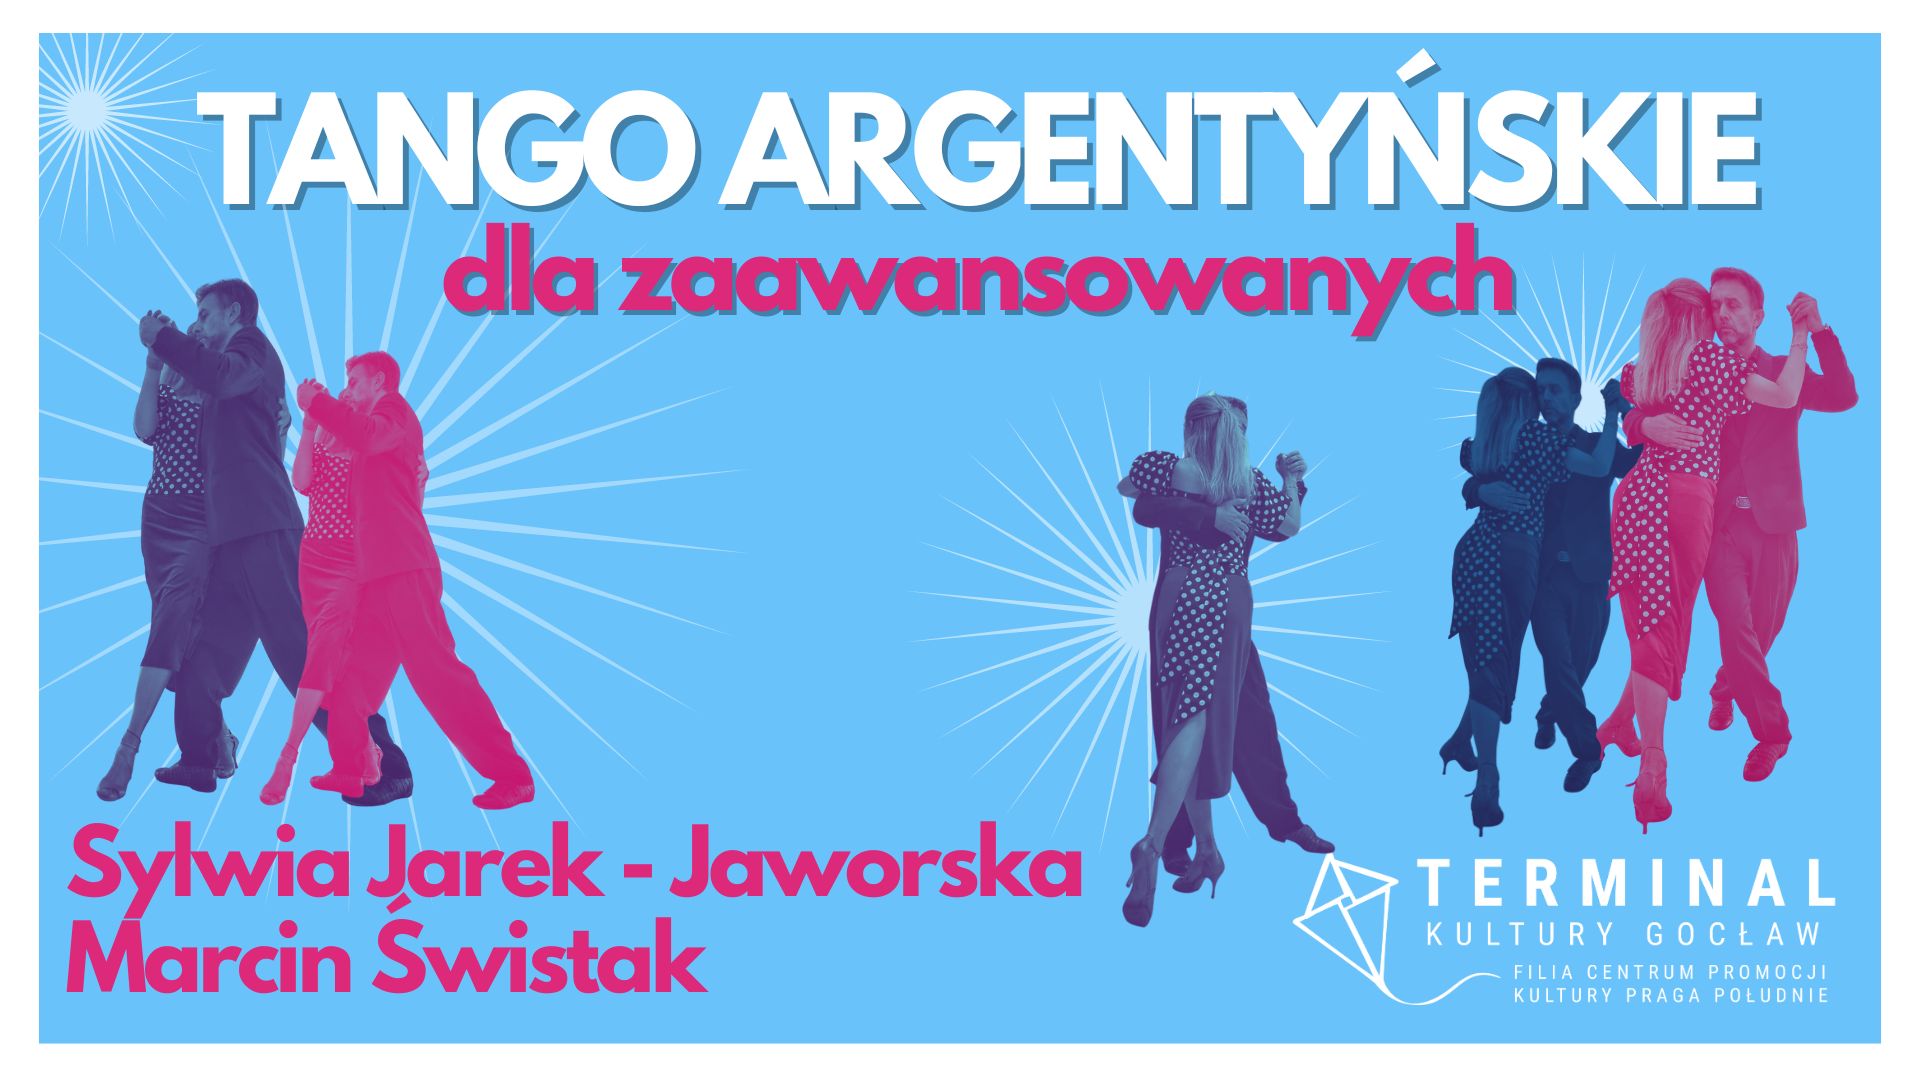 Tango Argentyńskie gr. zaawansowana -  Jarek - Jaworska i Świstak